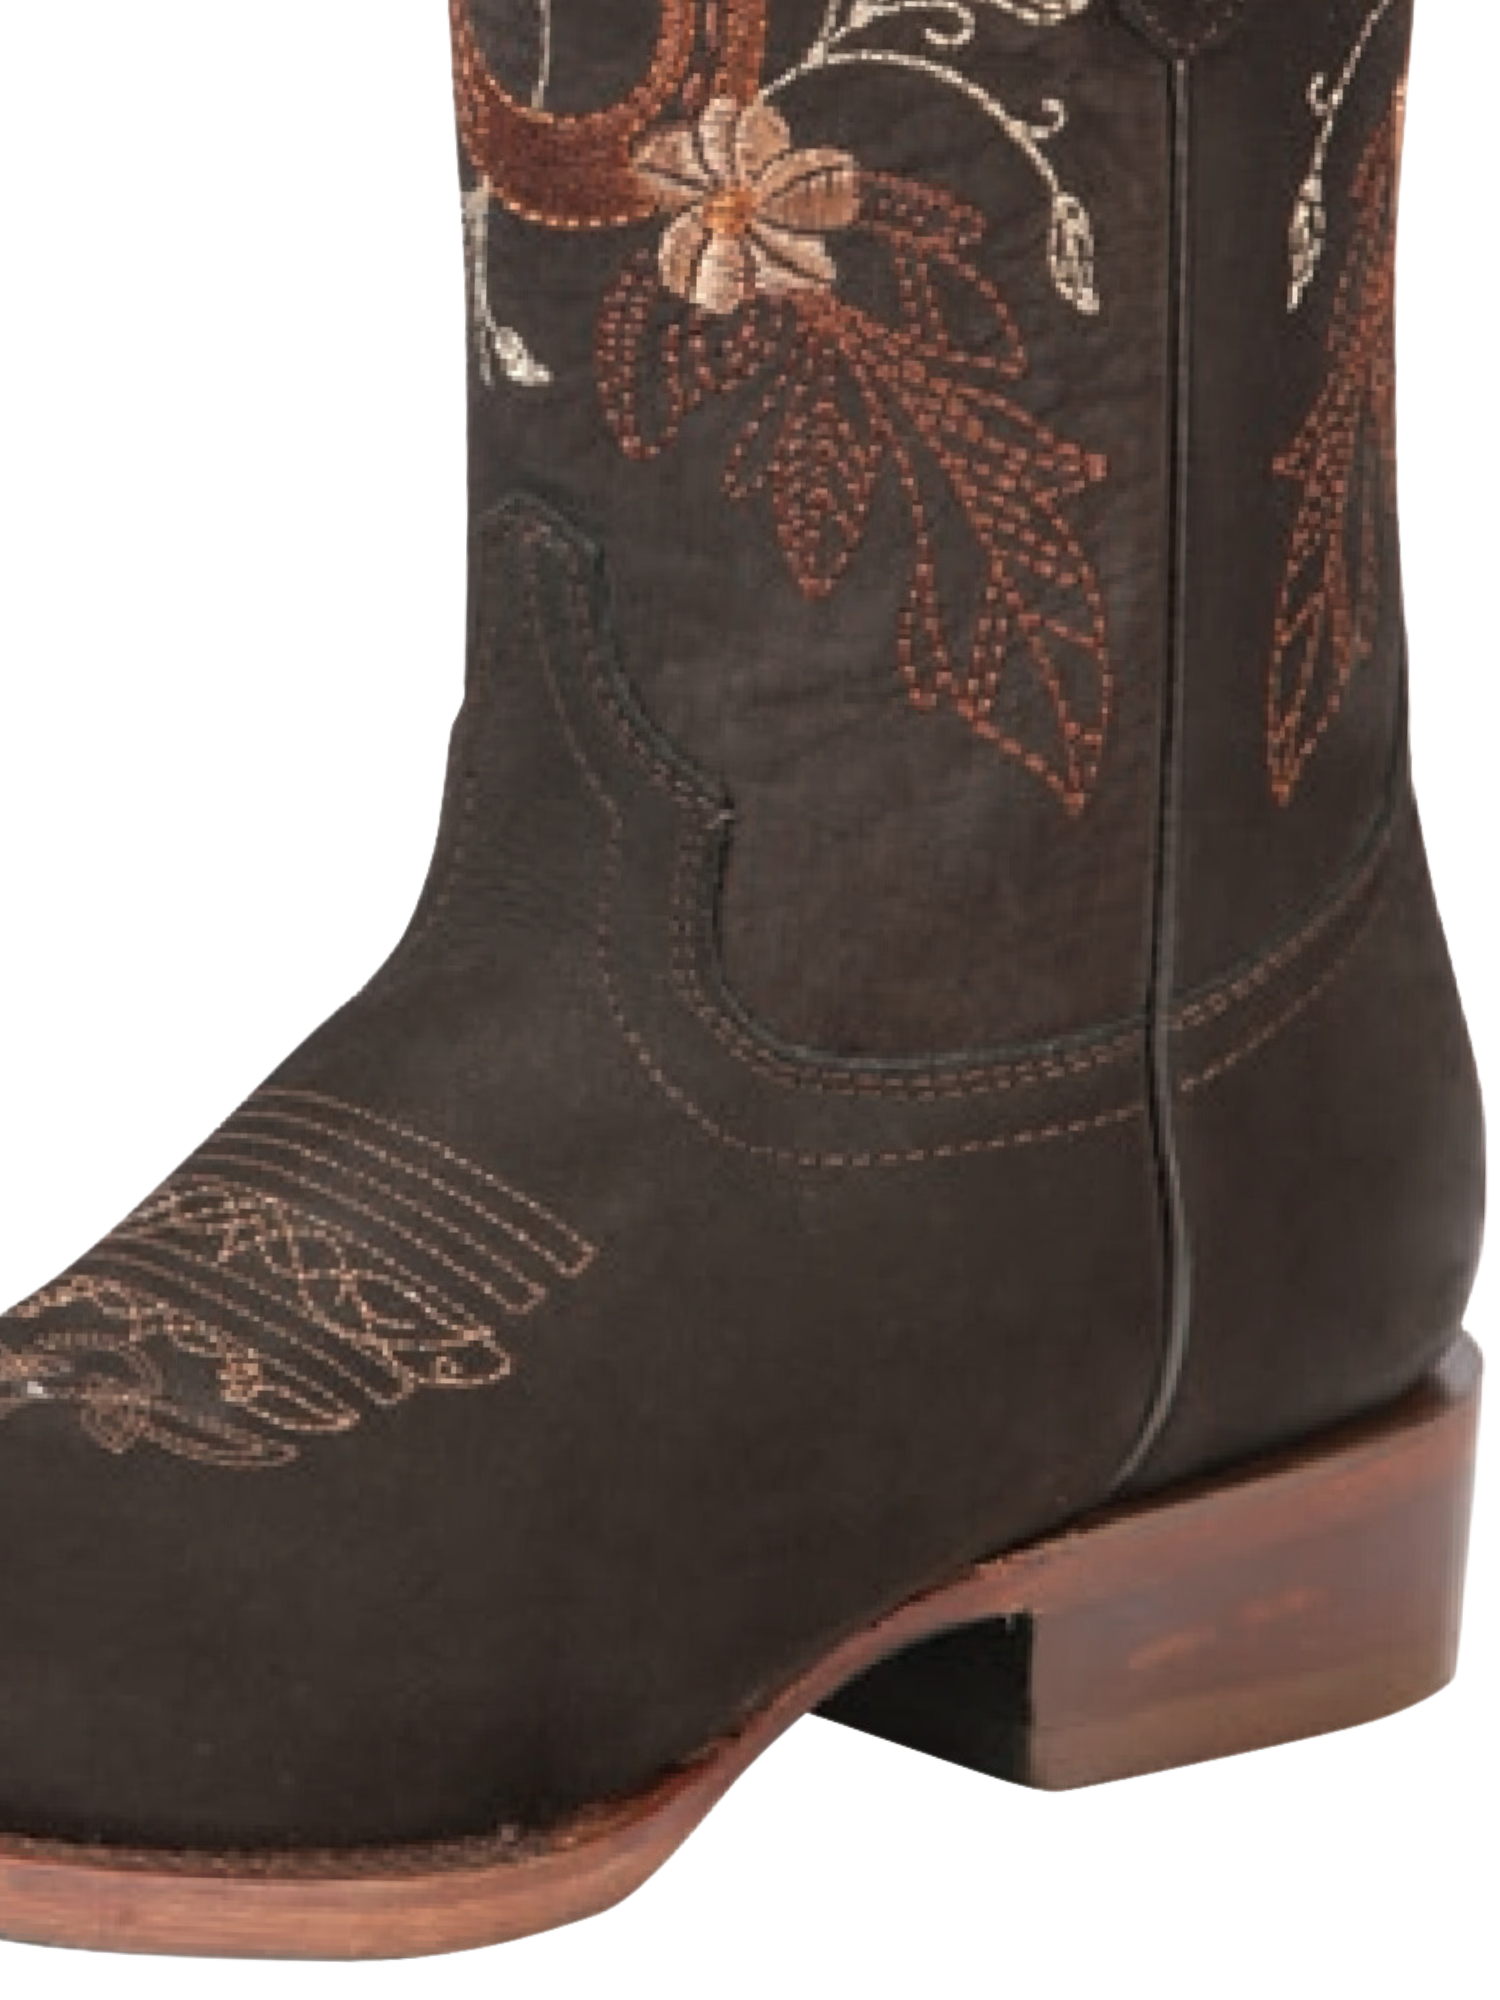 Botas Vaqueras Rodeo con Bordado de Flores de Piel Nobuck para Mujer 'El General' - ID: 44168 Cowgirl Boots El General 